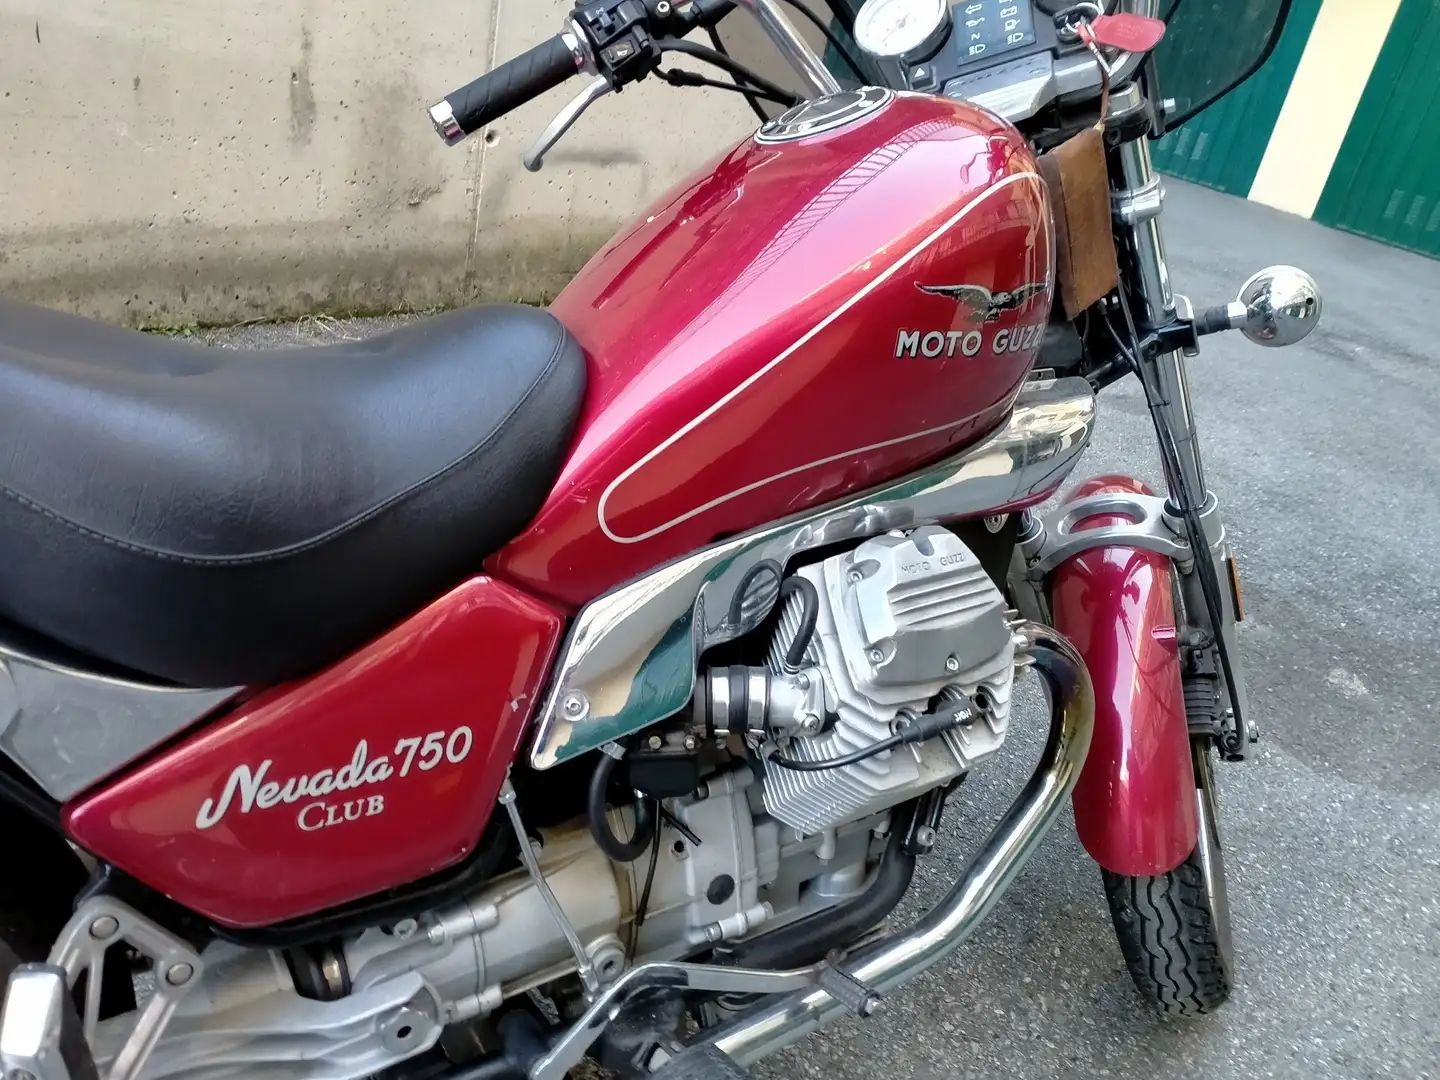 Moto Guzzi Nevada club Czerwony - 1